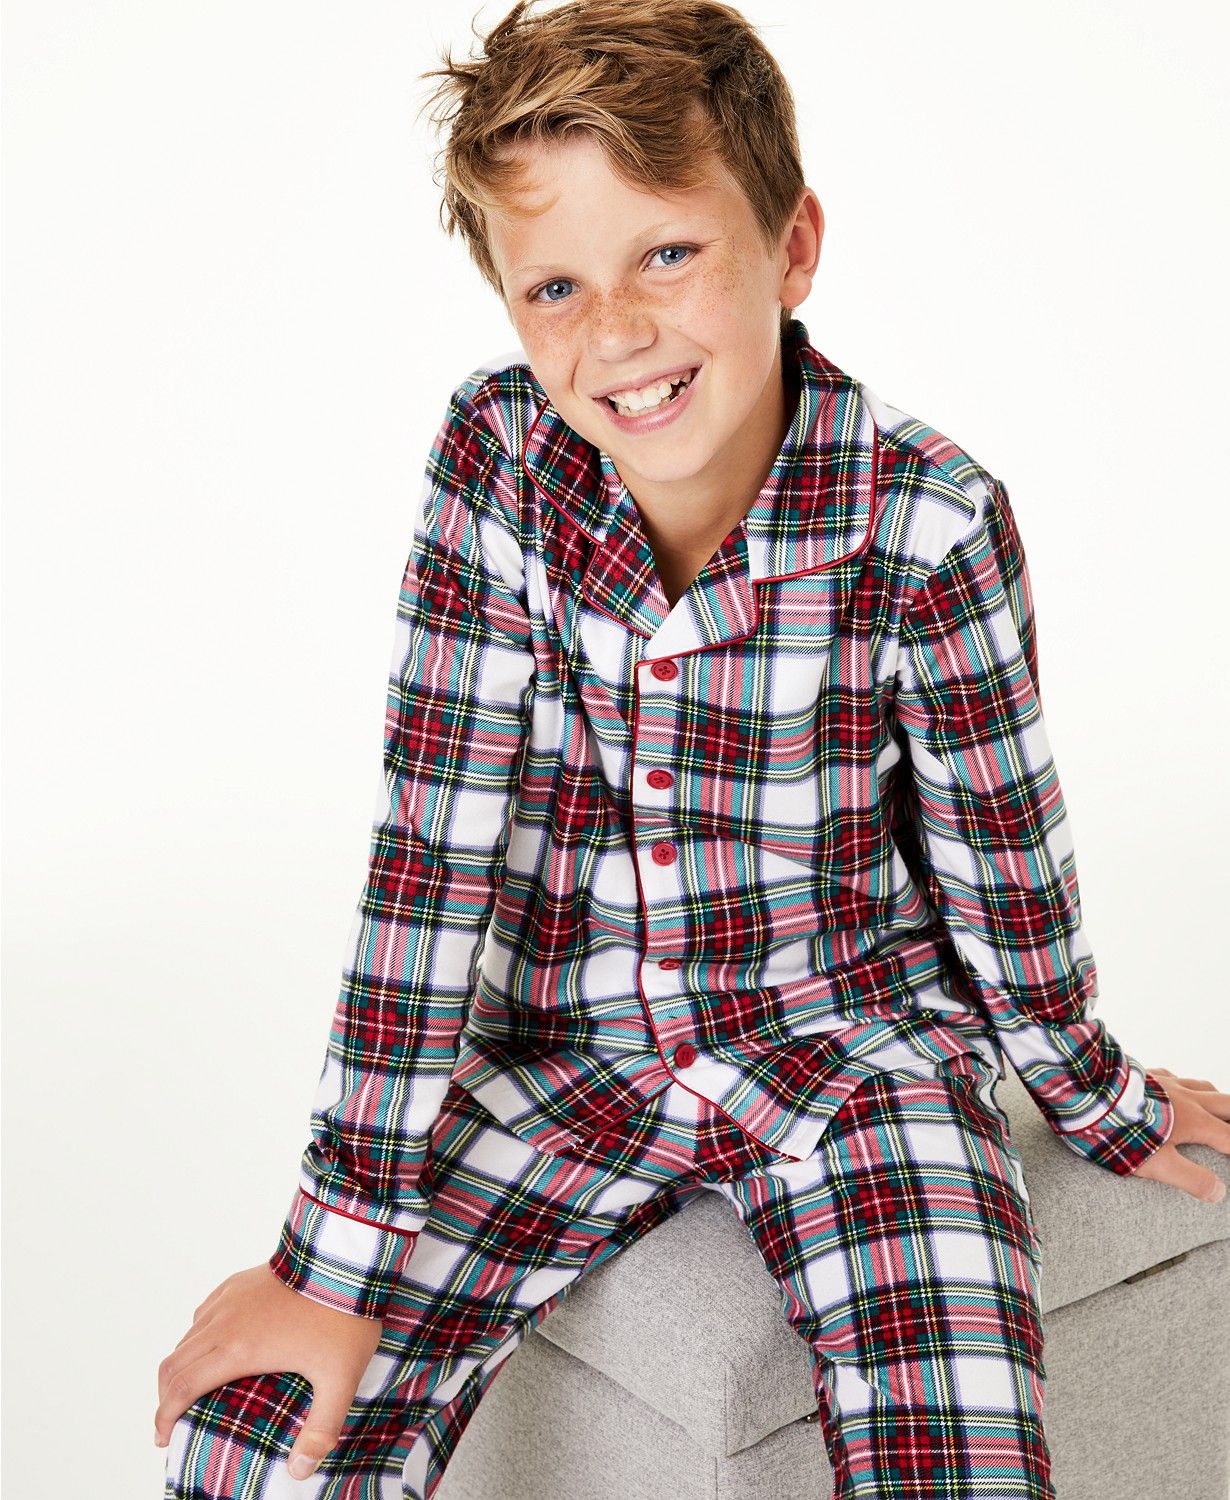 Family Pajamas Matching Kids Stewart Plaid Pajama Set, Created for Macy's & Reviews - Pajamas - K... | Macys (US)